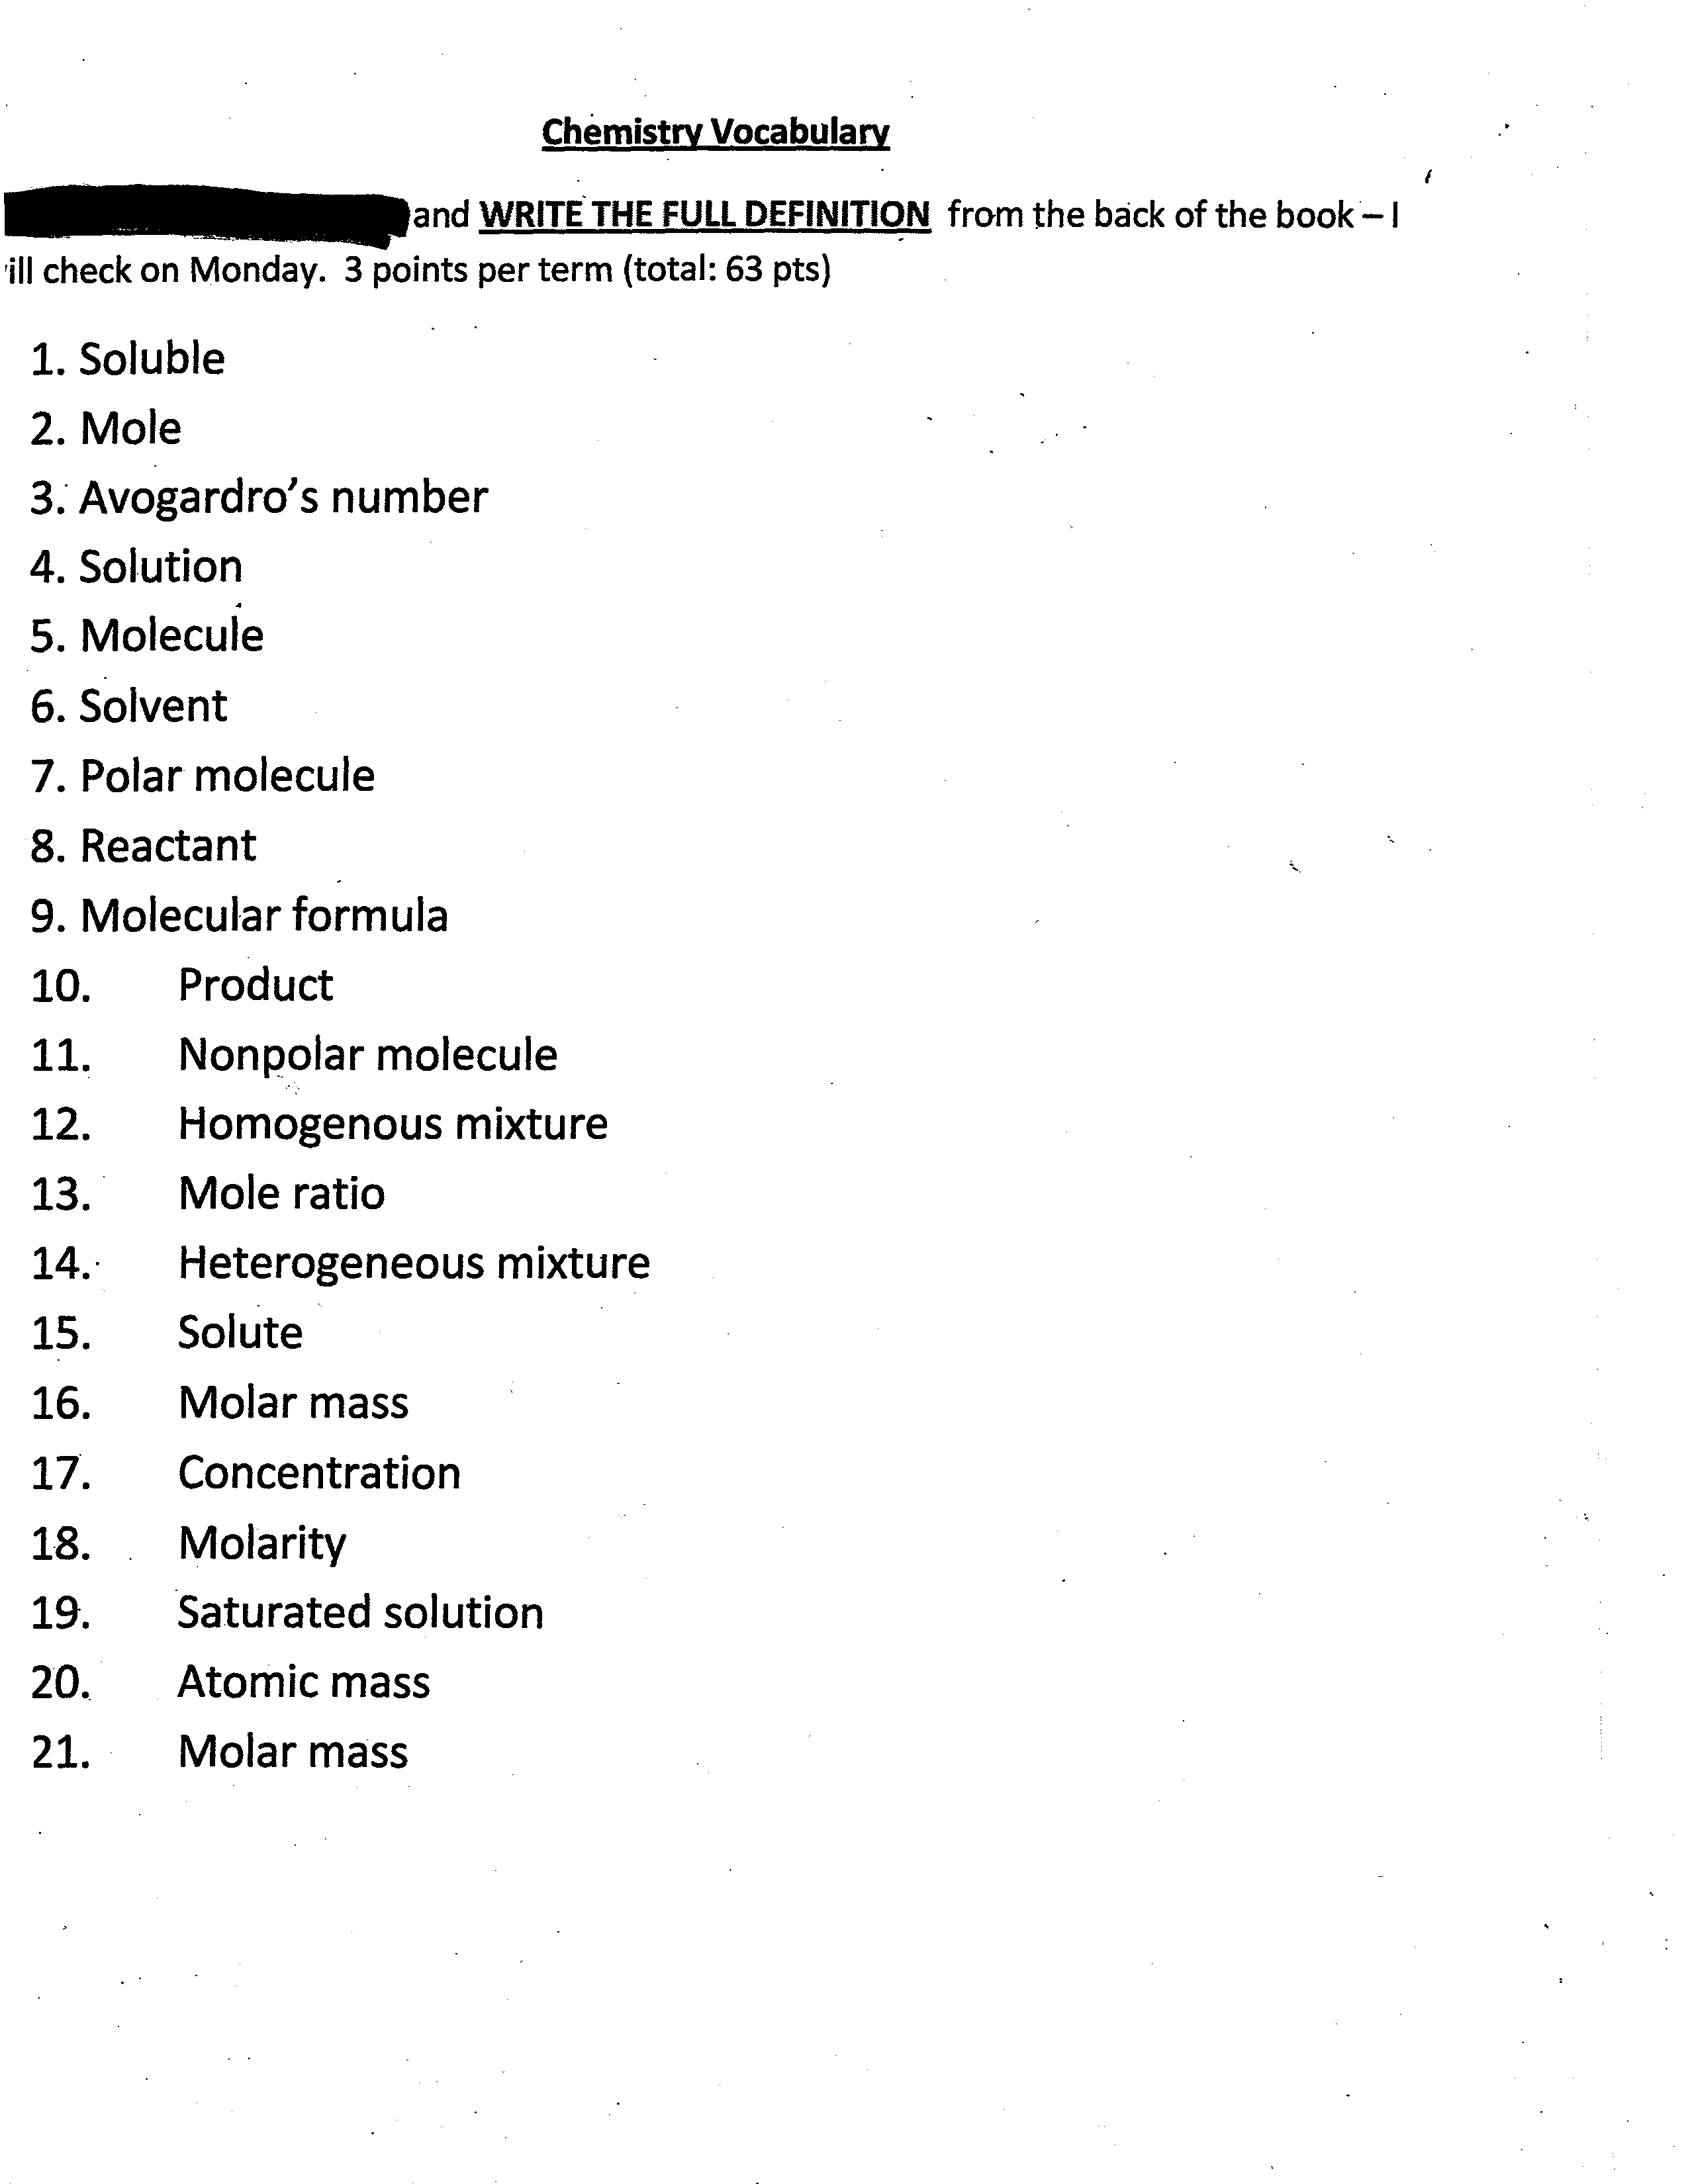 Chemistry Vocabulary Worksheet